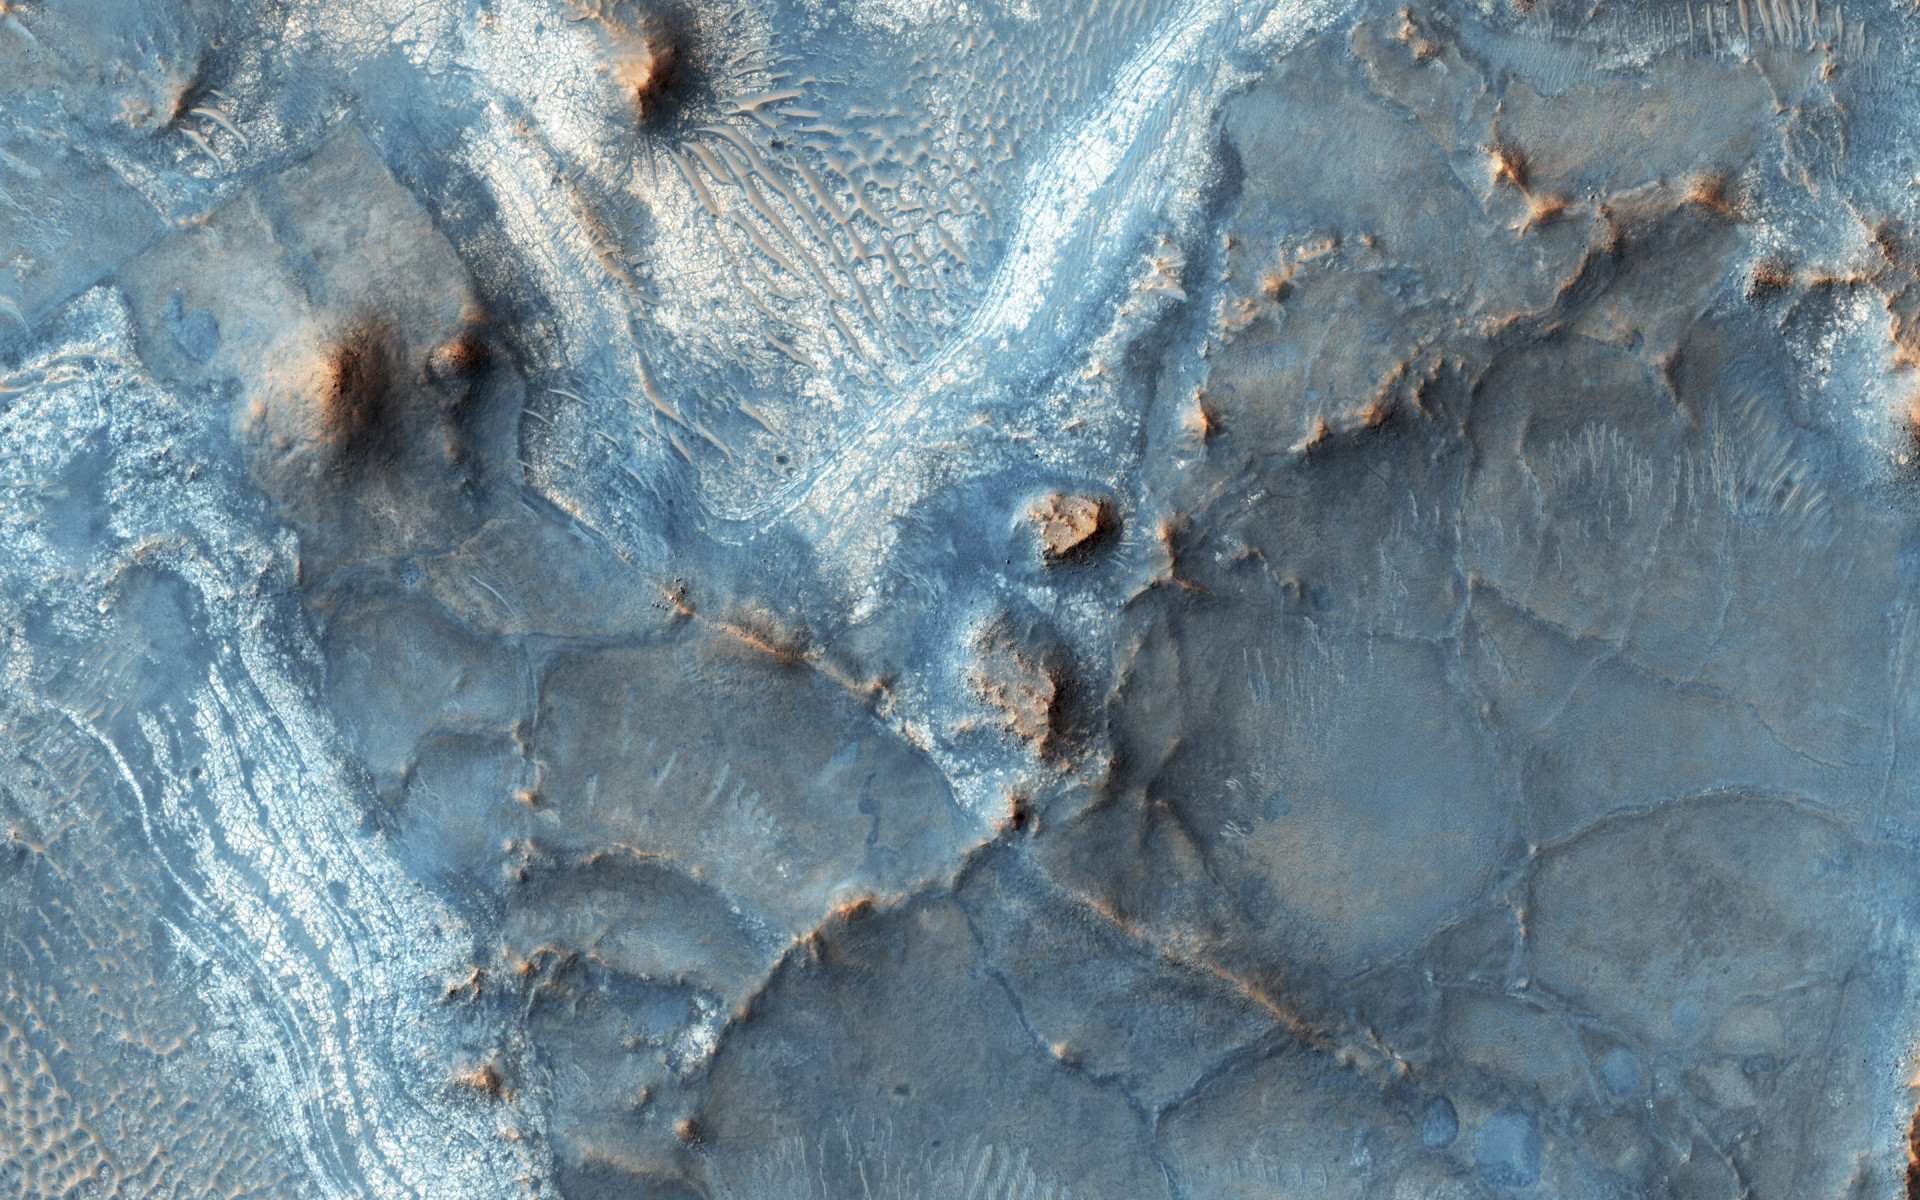 Localizada na borda noroeste da bacia de impacto de Isidis Planitia, Nili Fossae é uma das regiões mais coloridas de Marte.